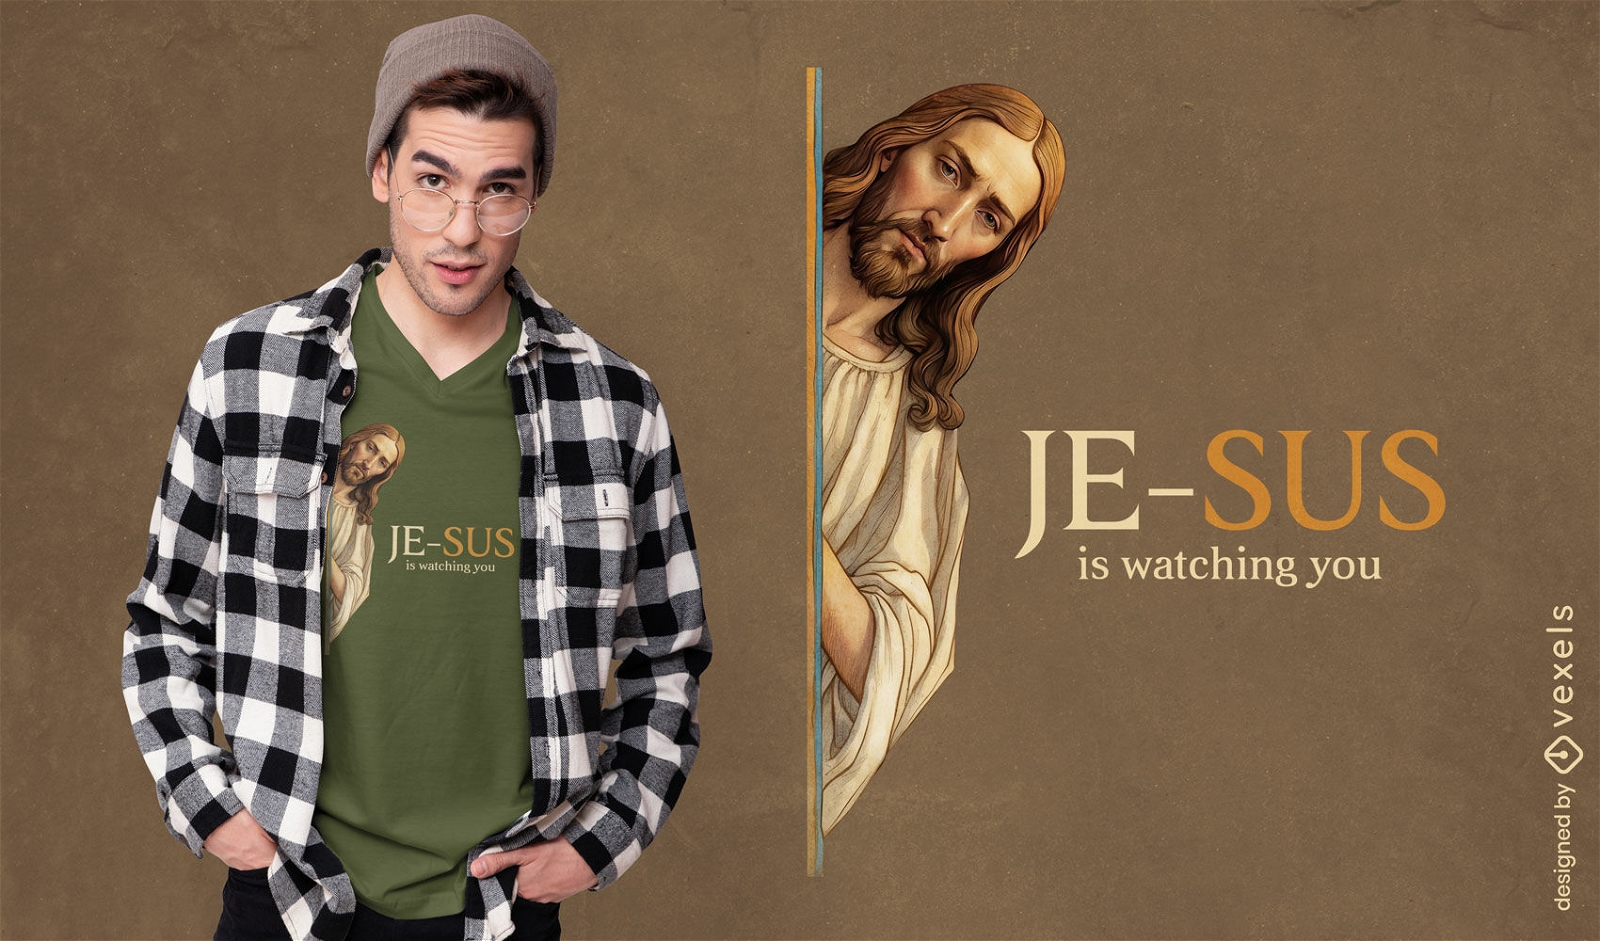 Dise?o de camiseta de Jes?s vigilante espiritual.